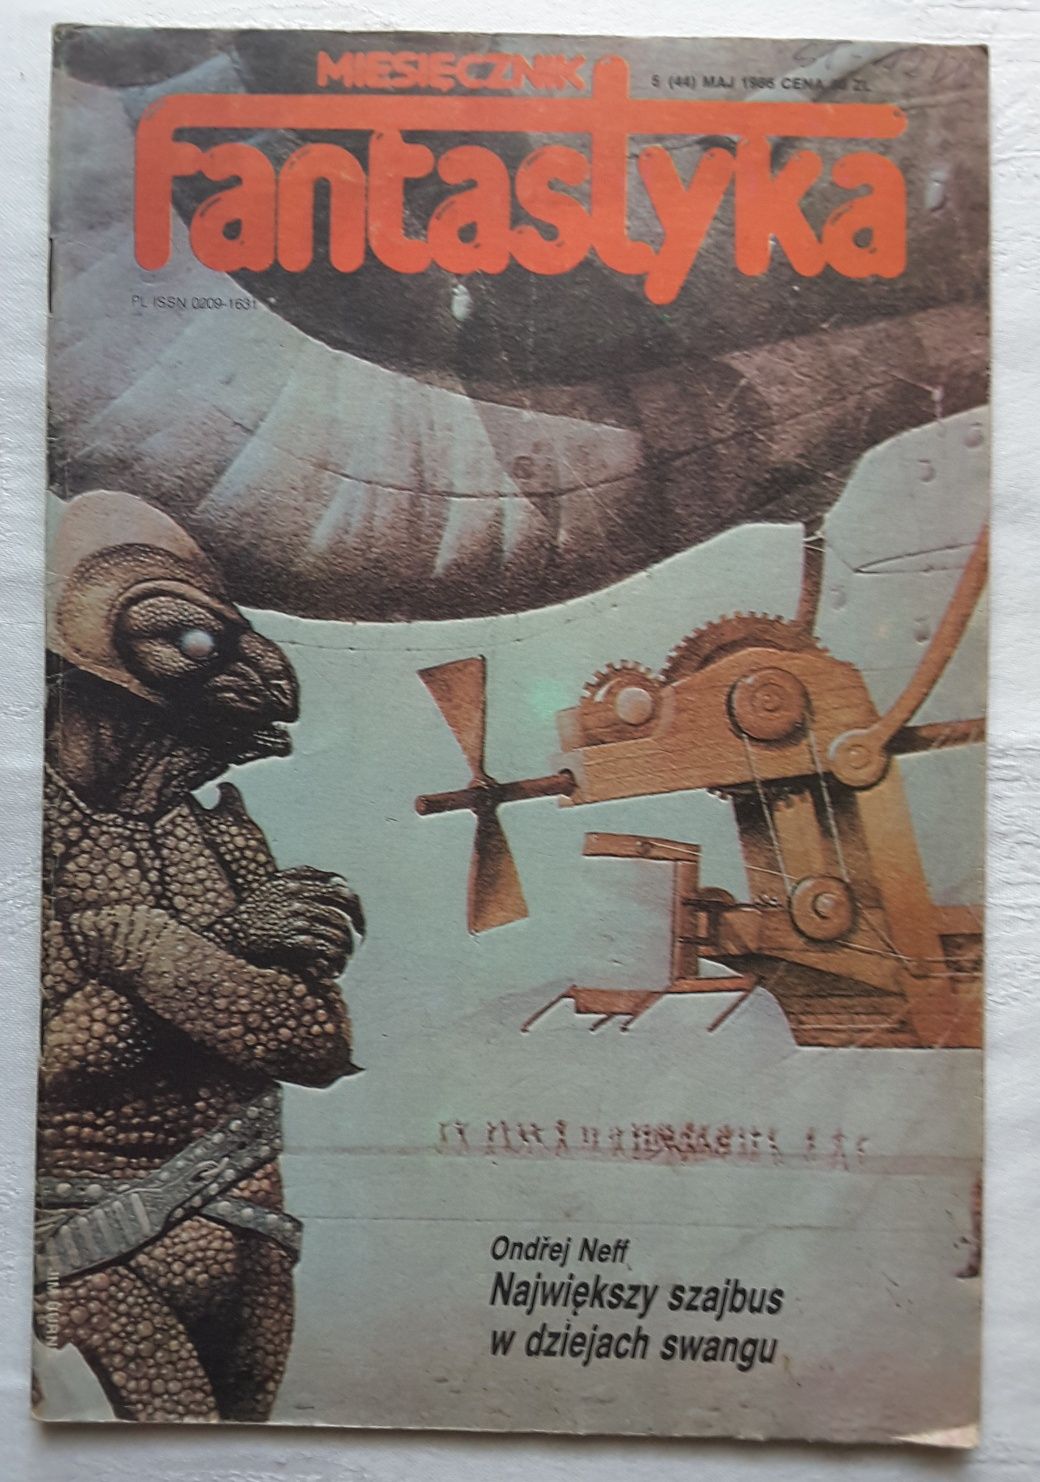 Czasopismo Fantastyka nr 5 (44) Maj 1986